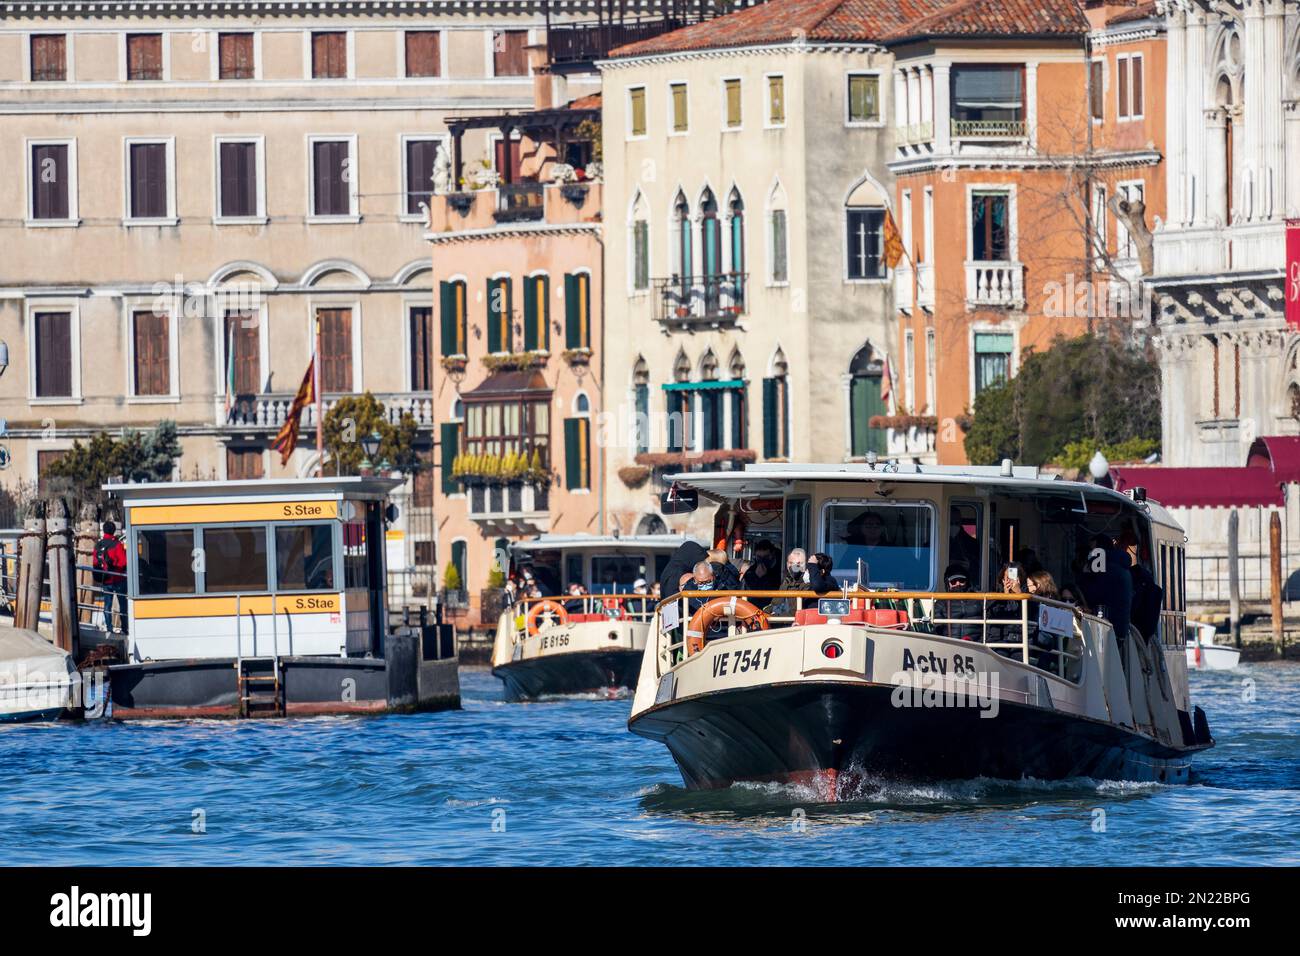 Vaporetto avec arrêt de bateau-bus, ACTV, Canal Grande, Grand Canal, Venise, Vénétie, Italie, Europe Banque D'Images